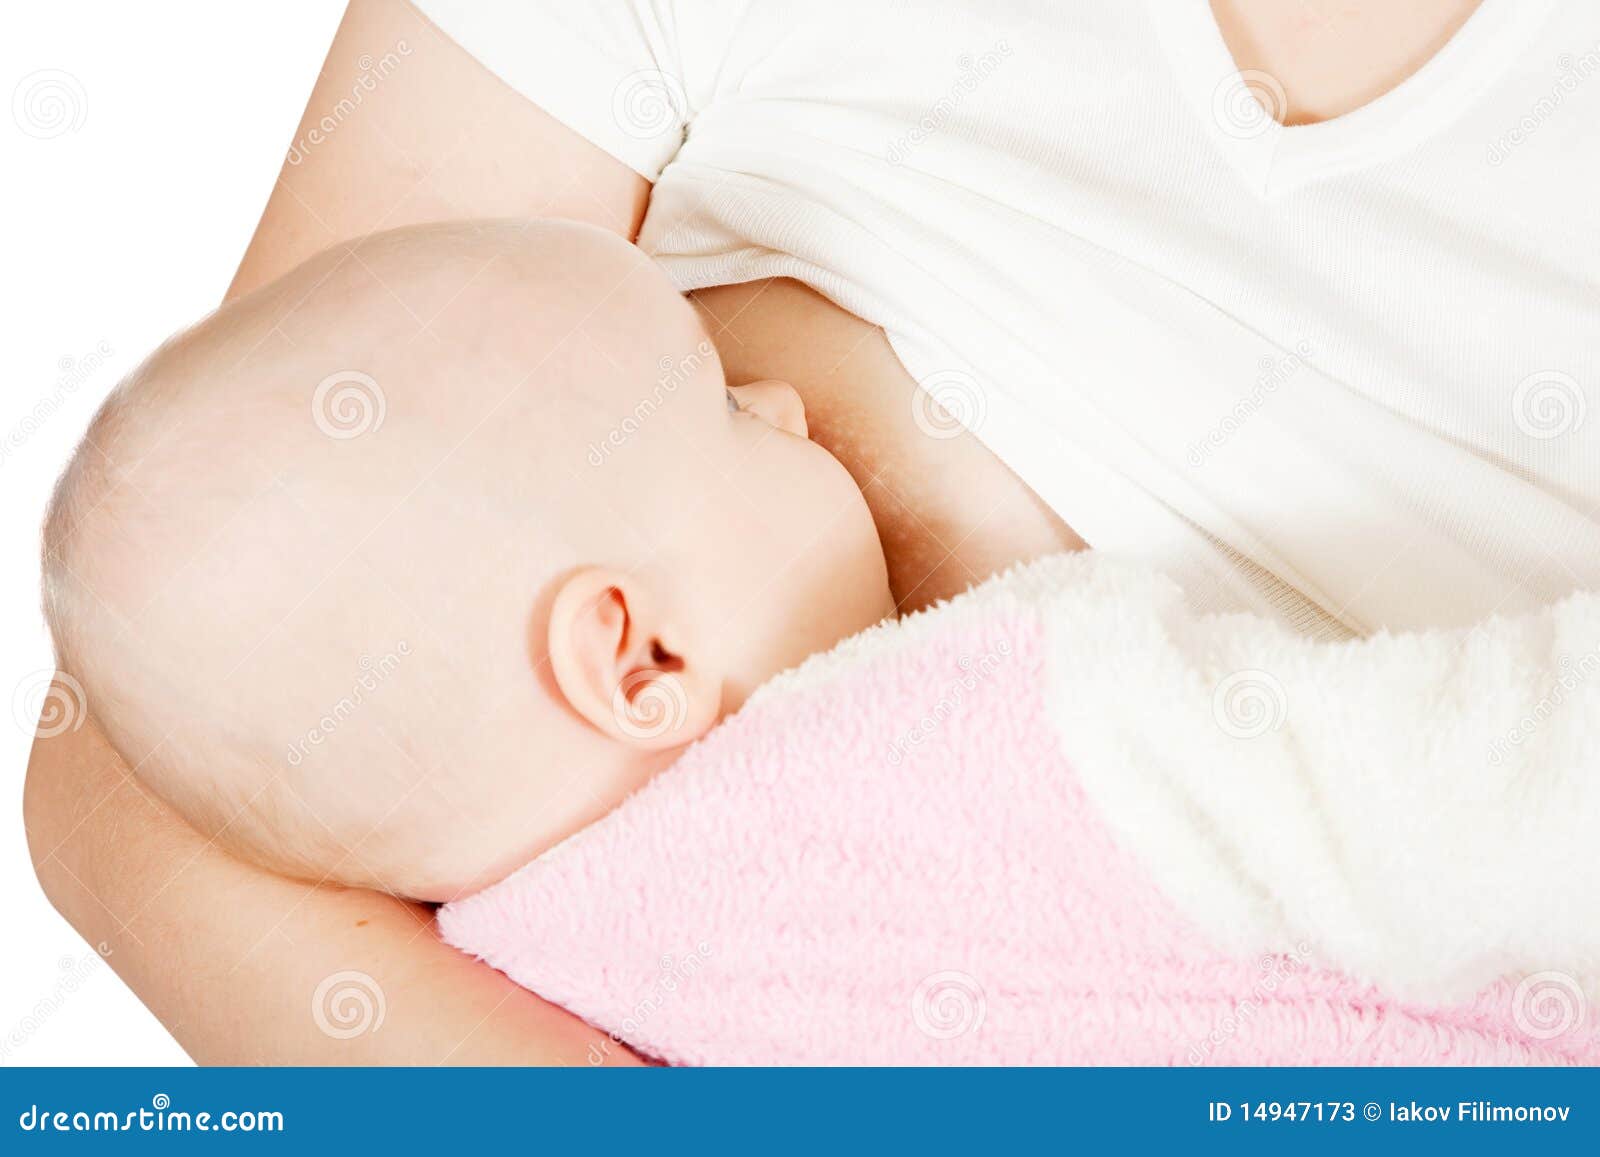 Фото сосков беременных: Как выглядят соски у беременных на. Итак, почему ореолы сосков могут потемнеть. Уход за грудью